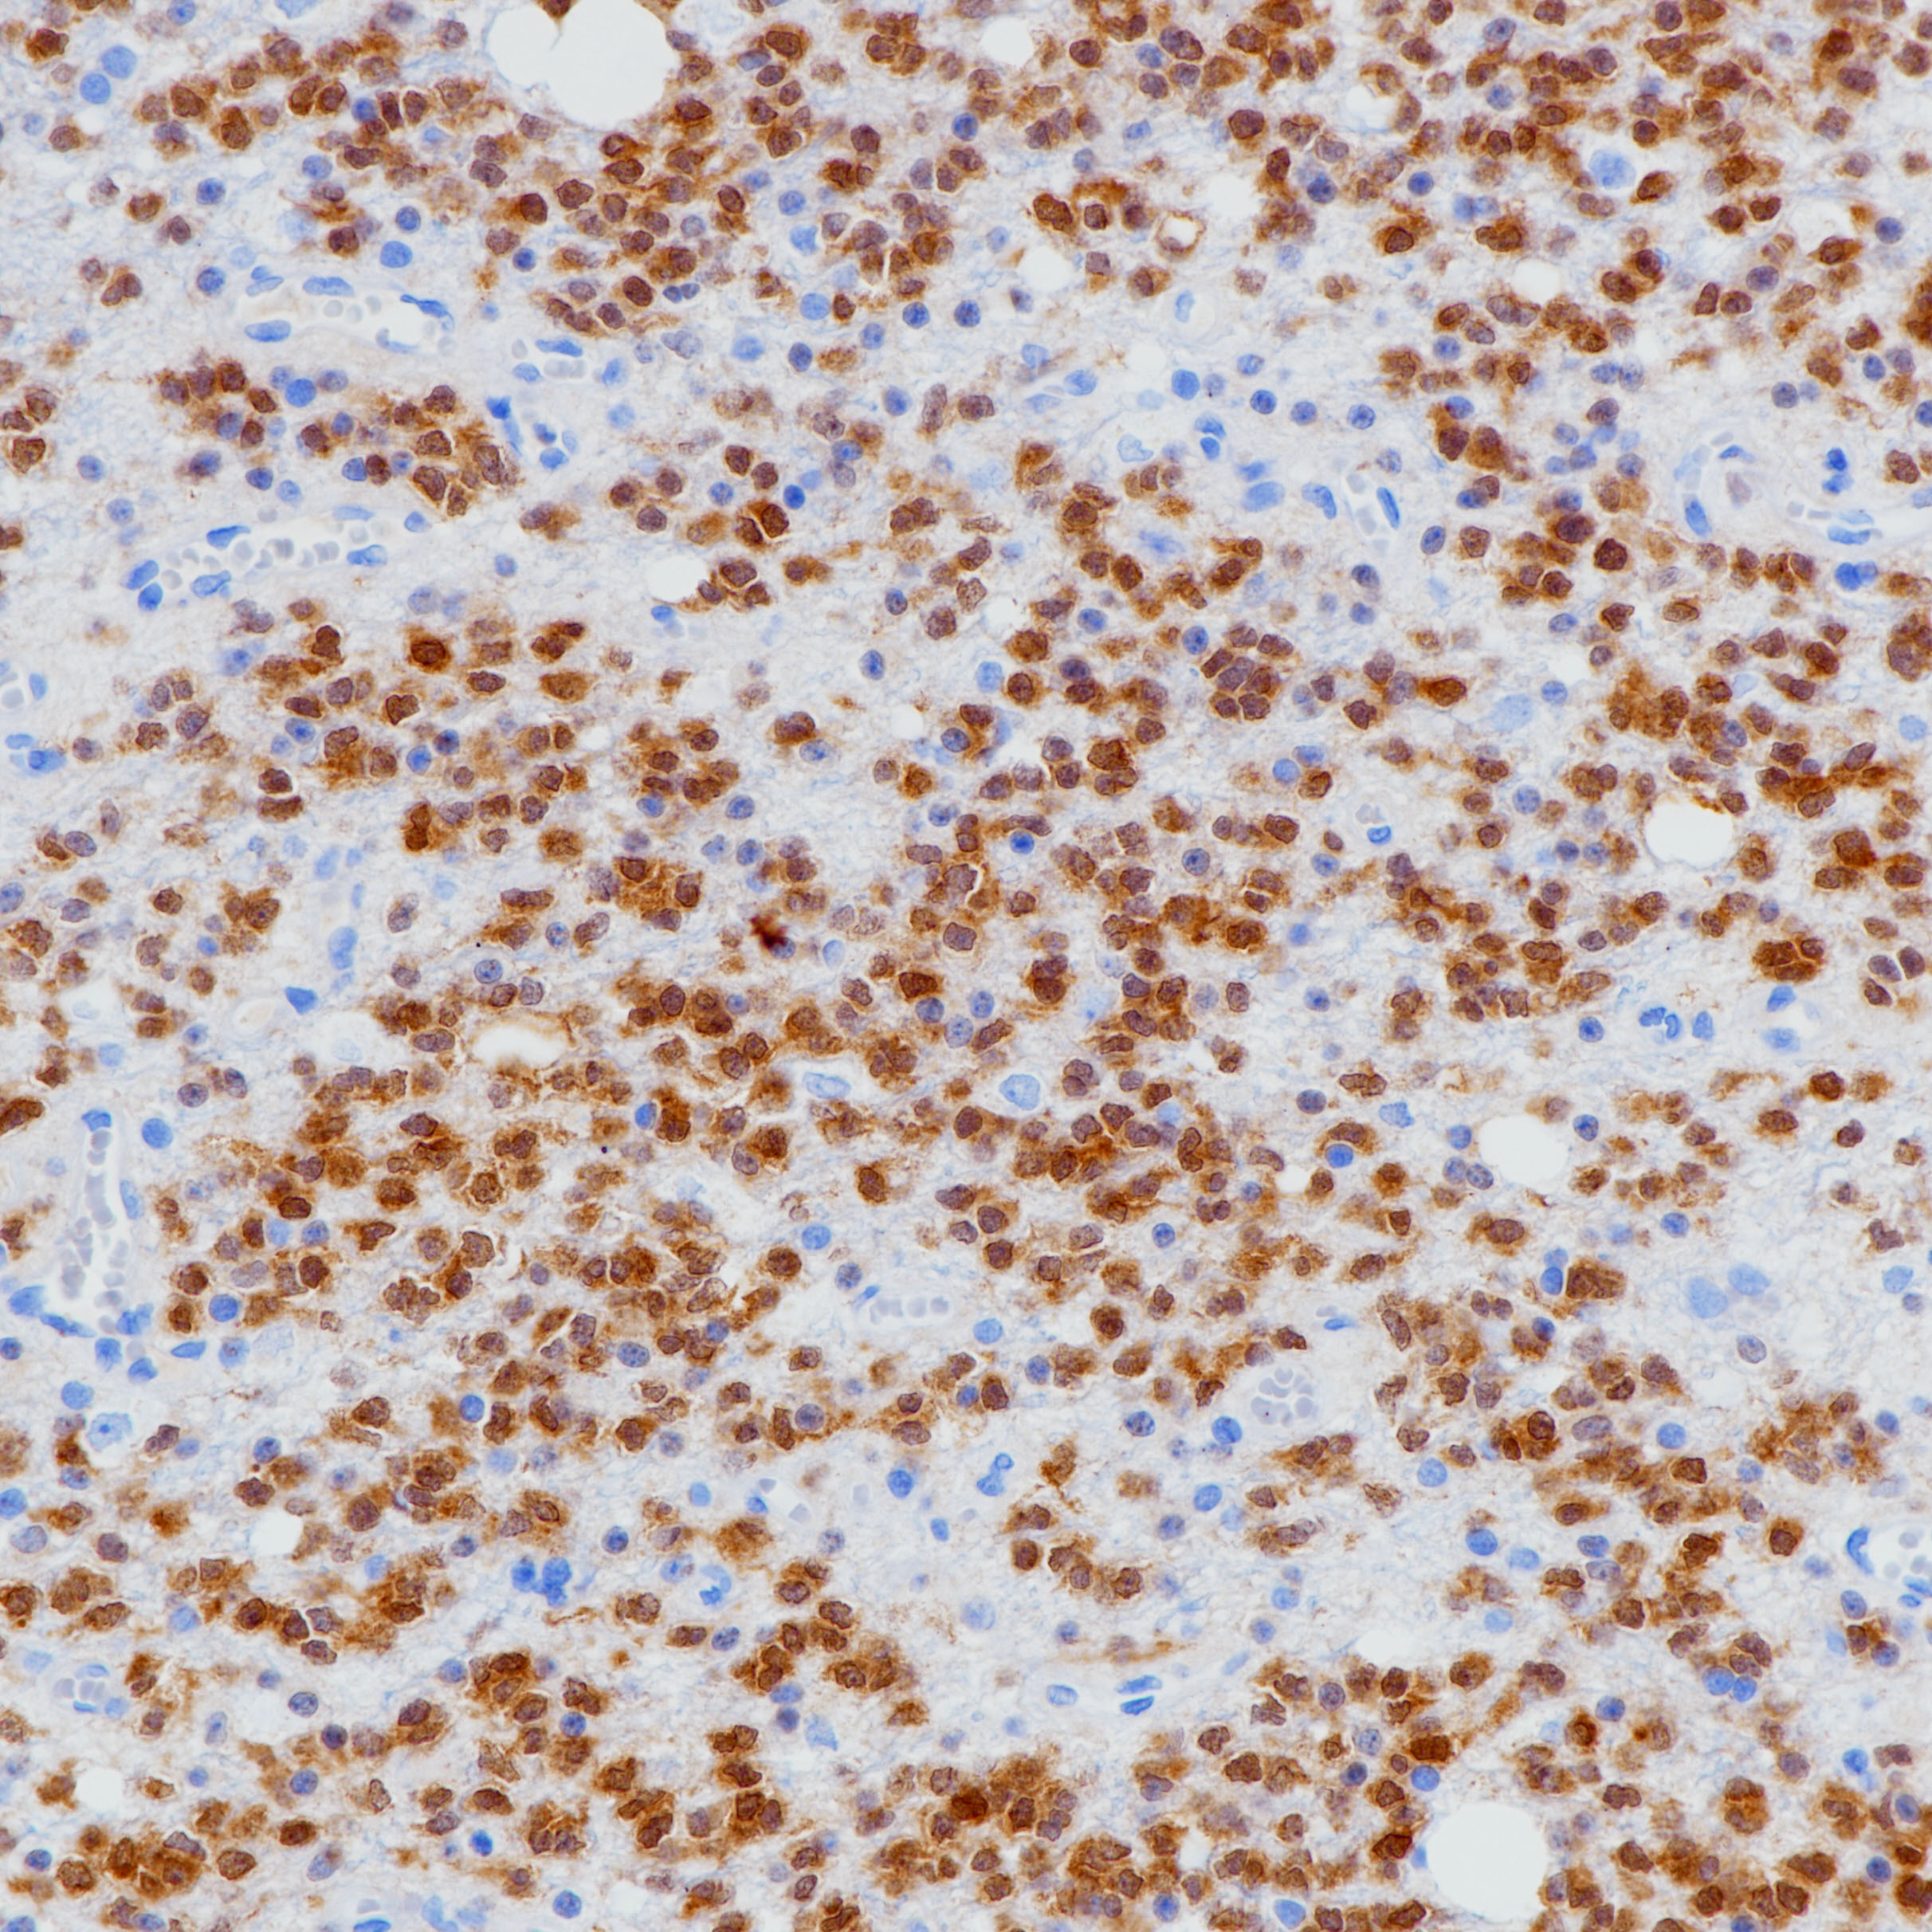 星形胶质细胞瘤IDH-1（BP6205）染色